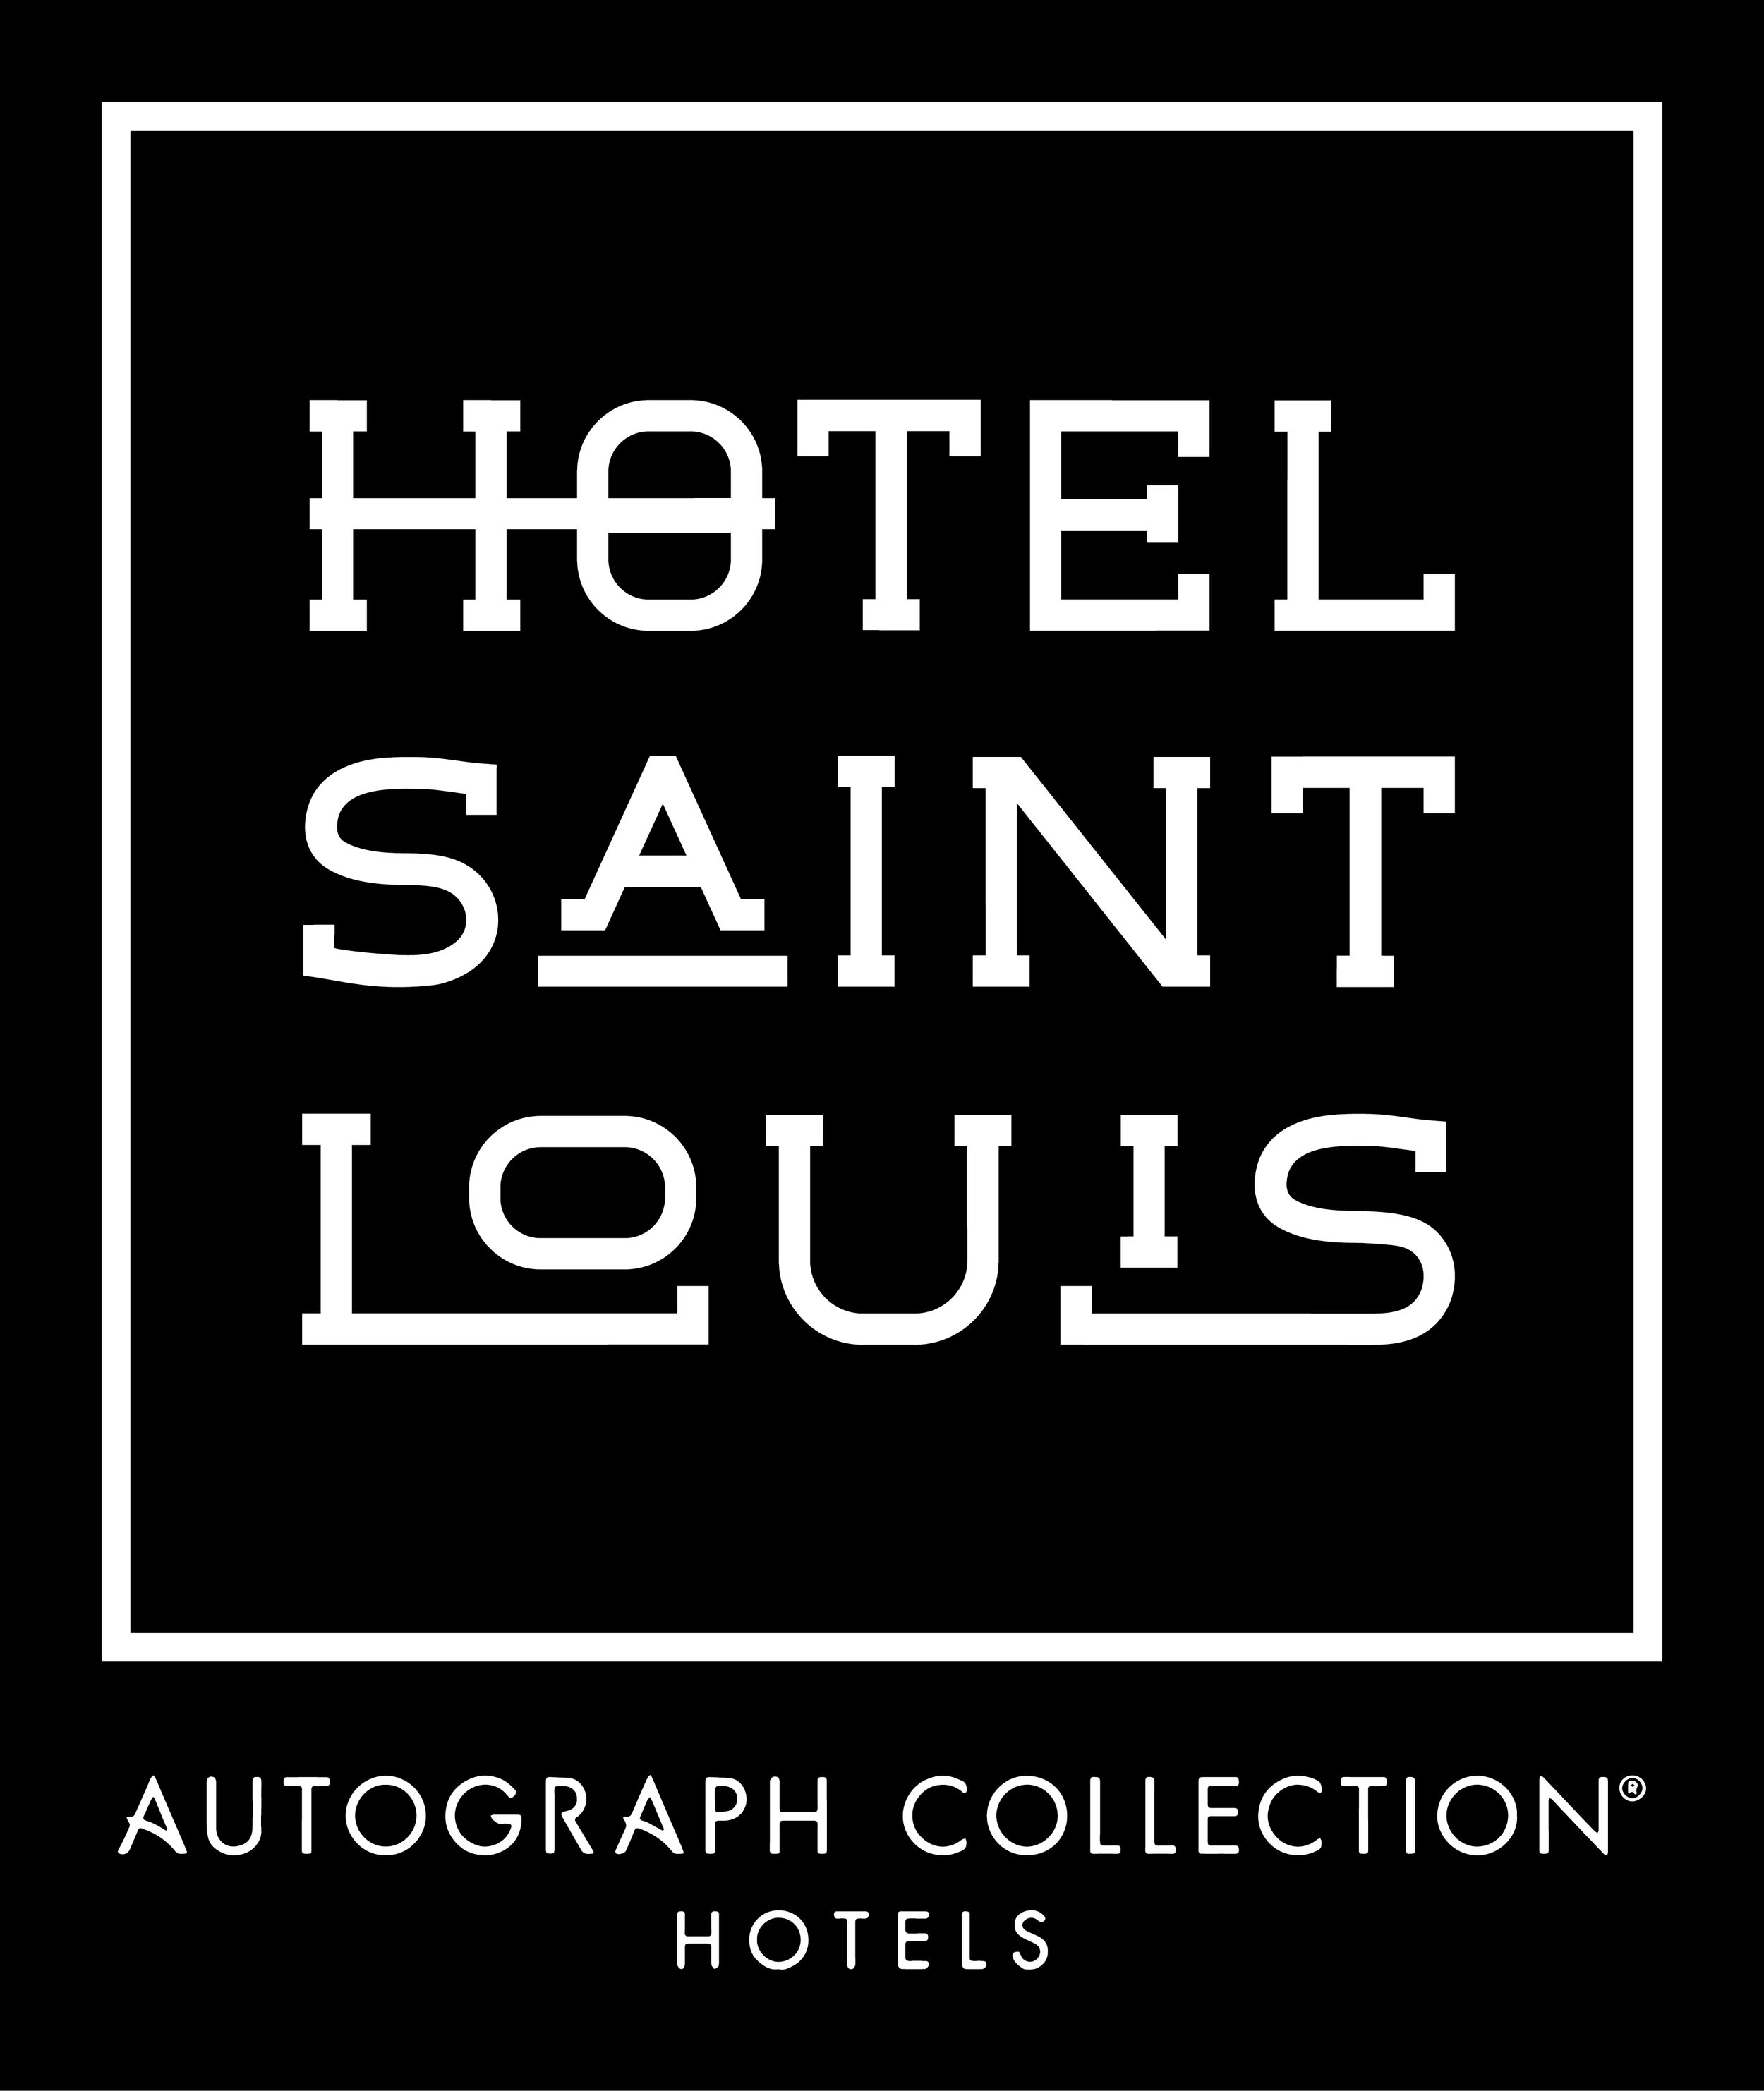 Hotel+Saint+Louis+Autograph+Collection-01.png